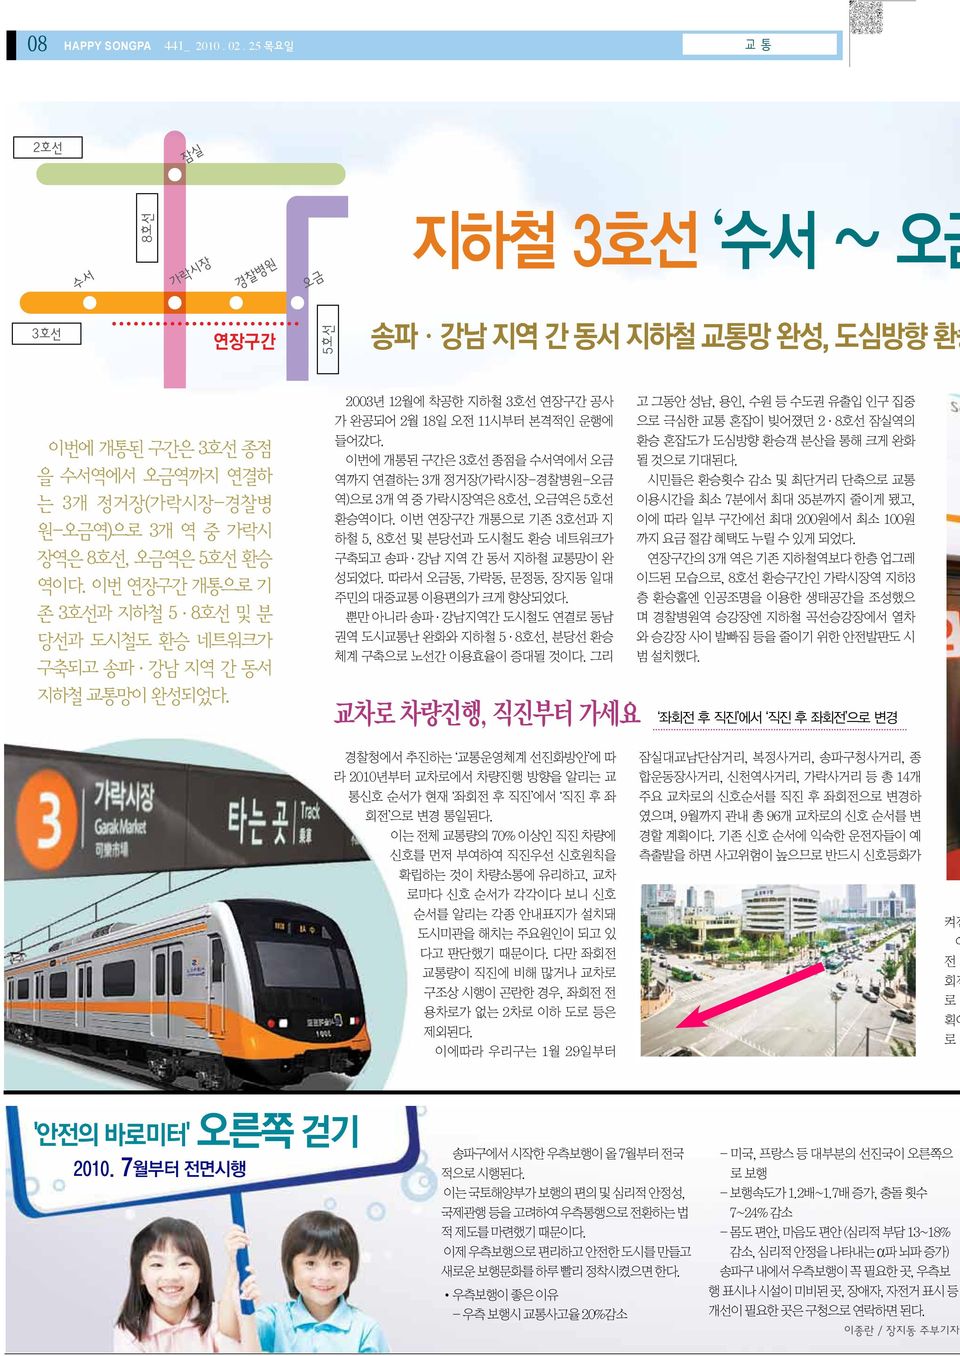 역이다. 이번 연장구간 개통으로 기 존 3호선과 지하철 5 8호선 및 분 당선과 도시철도 환승 네트워크가 구축되고 송파 강남 지역 간 동서 지하철 교통망이 완성되었다.